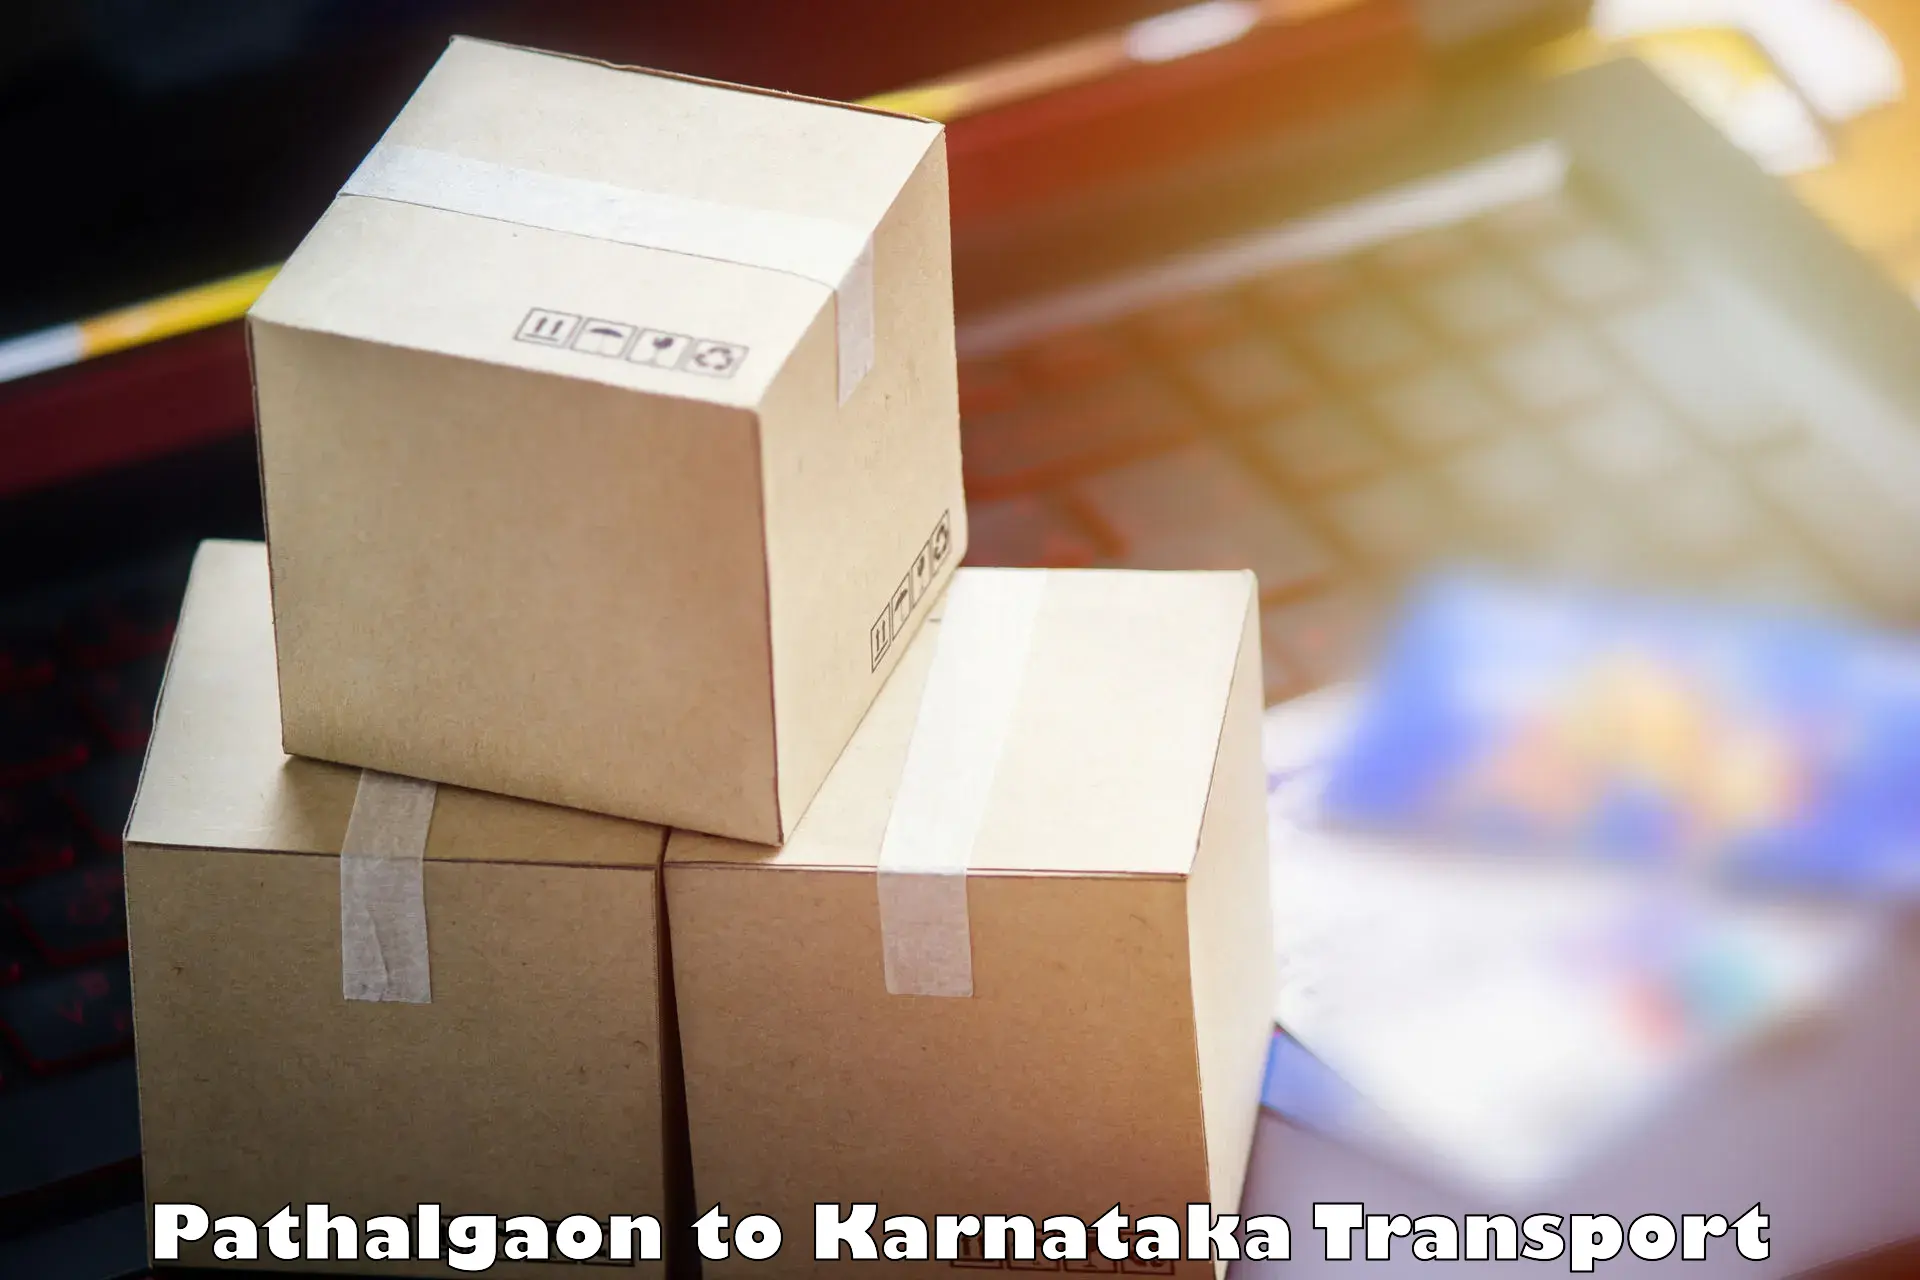 Furniture transport service Pathalgaon to Ugar